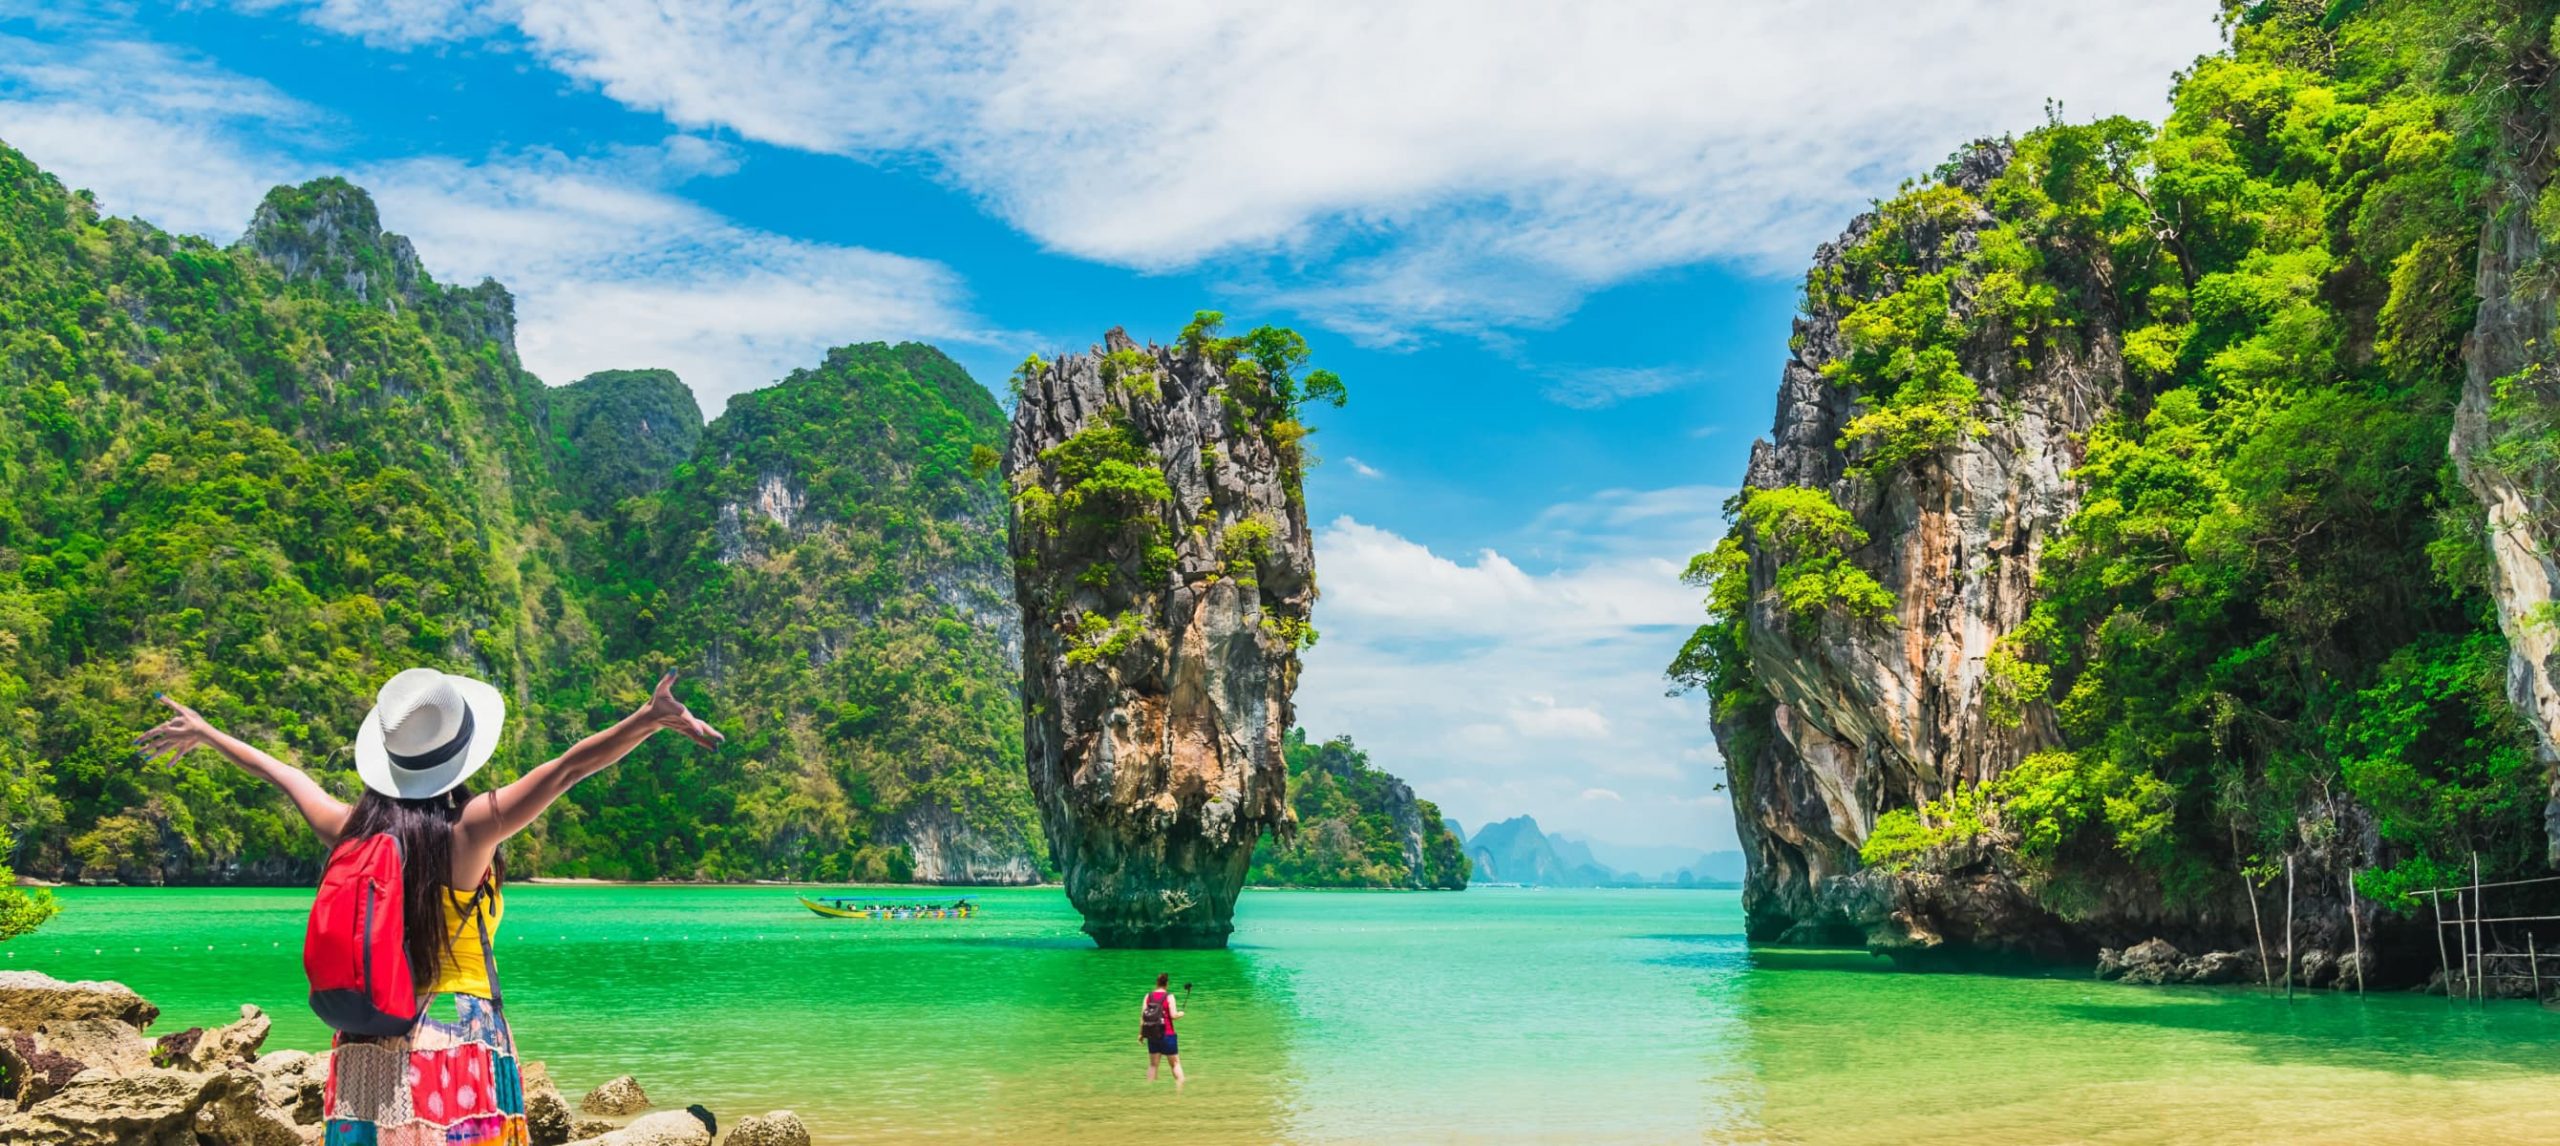 The Best Islands Around Phuket, Thailand